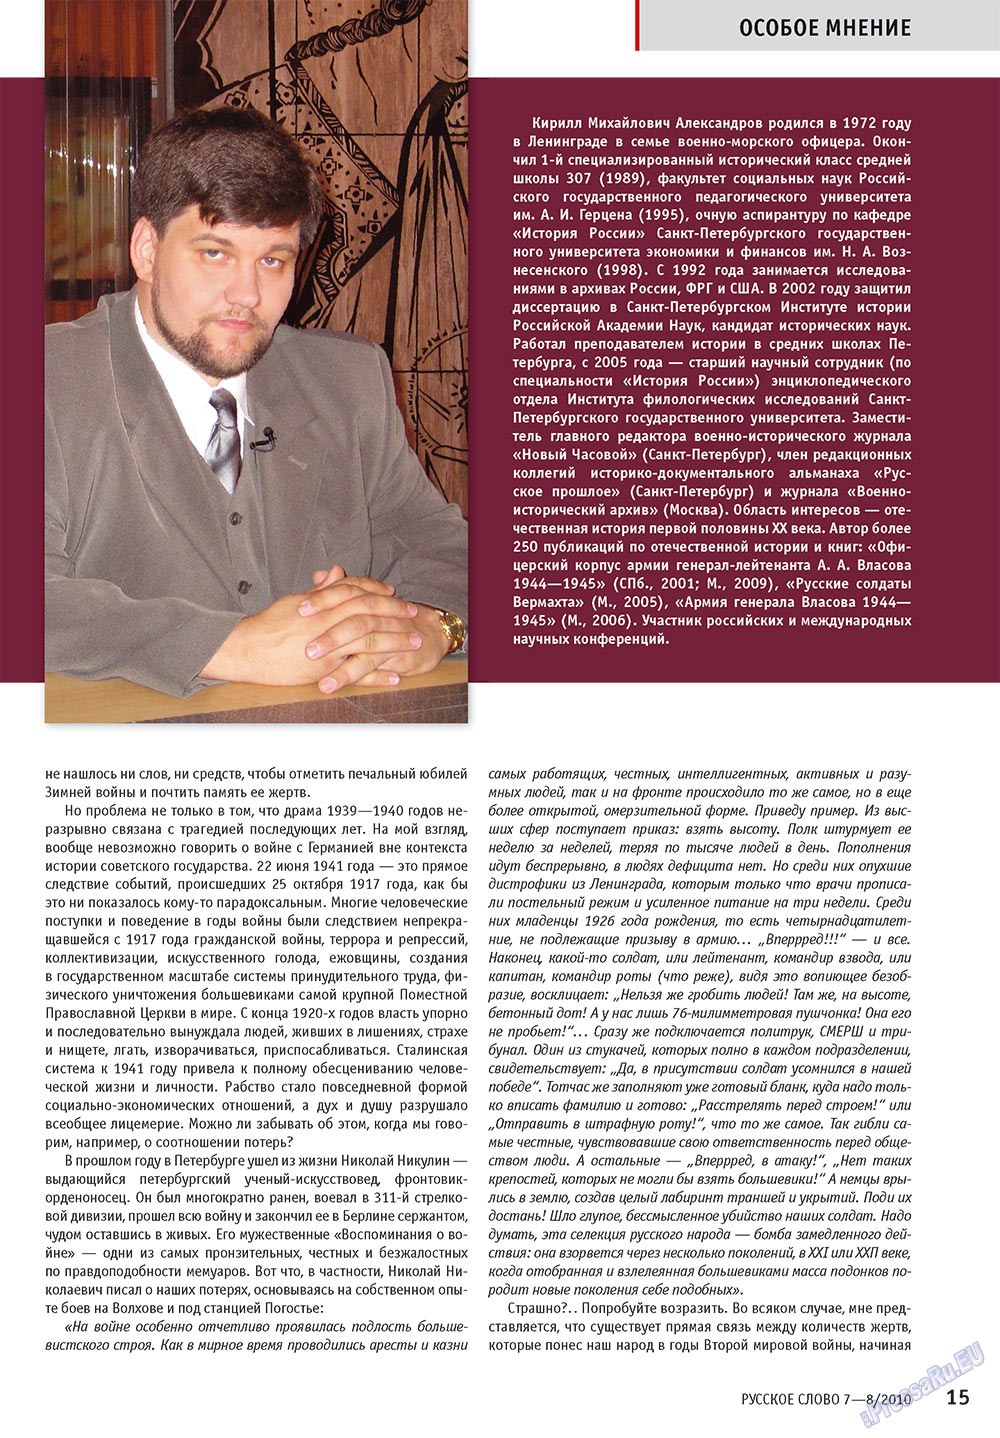 Русское слово, журнал. 2010 №7 стр.17